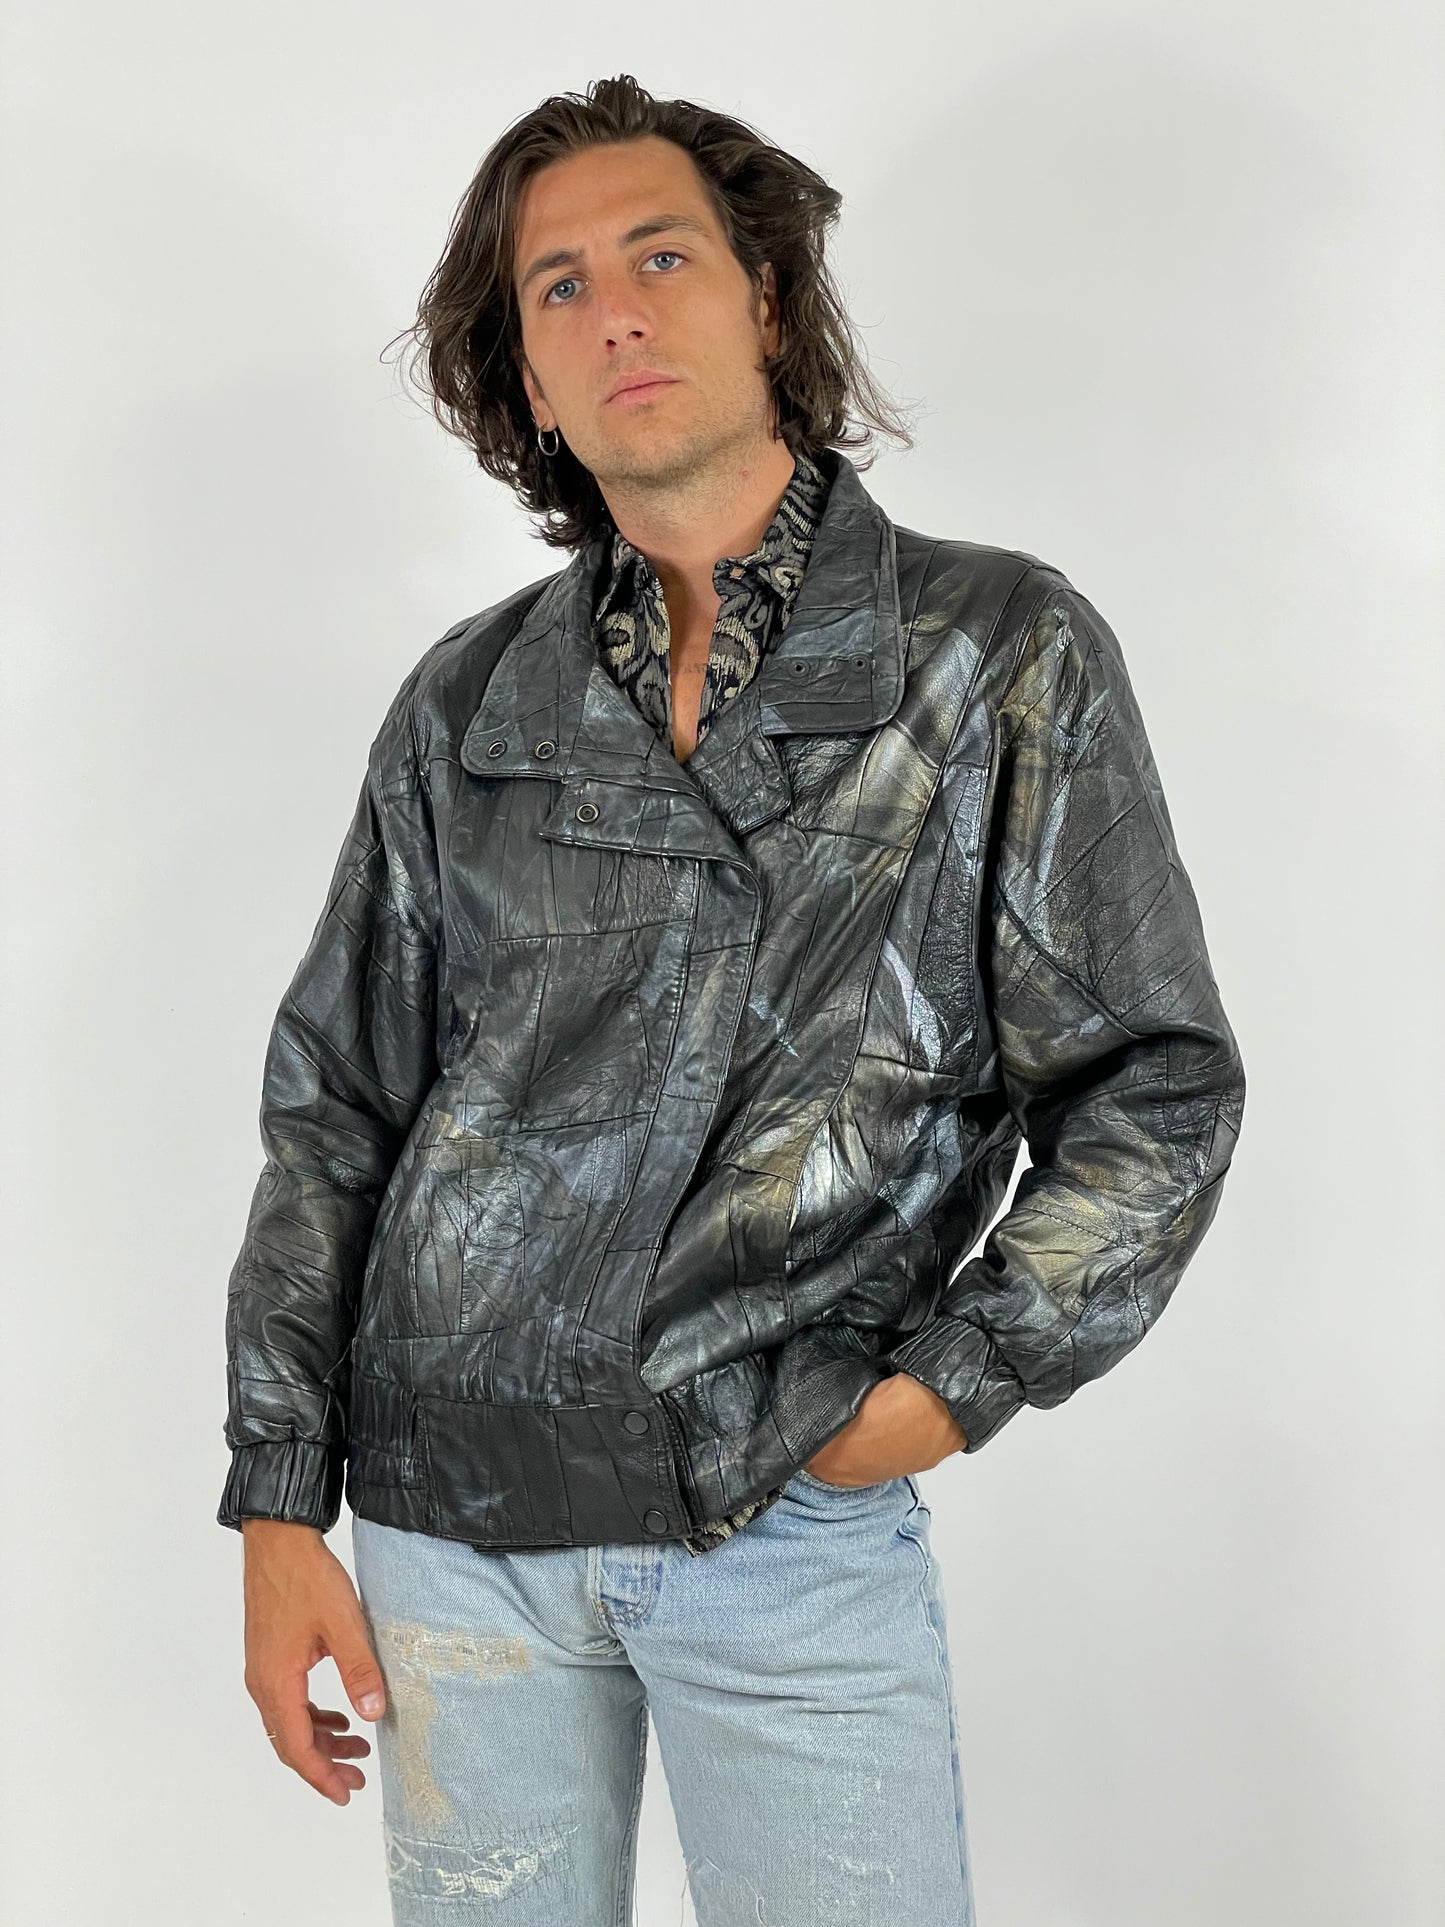 Vintage 1980s jacket